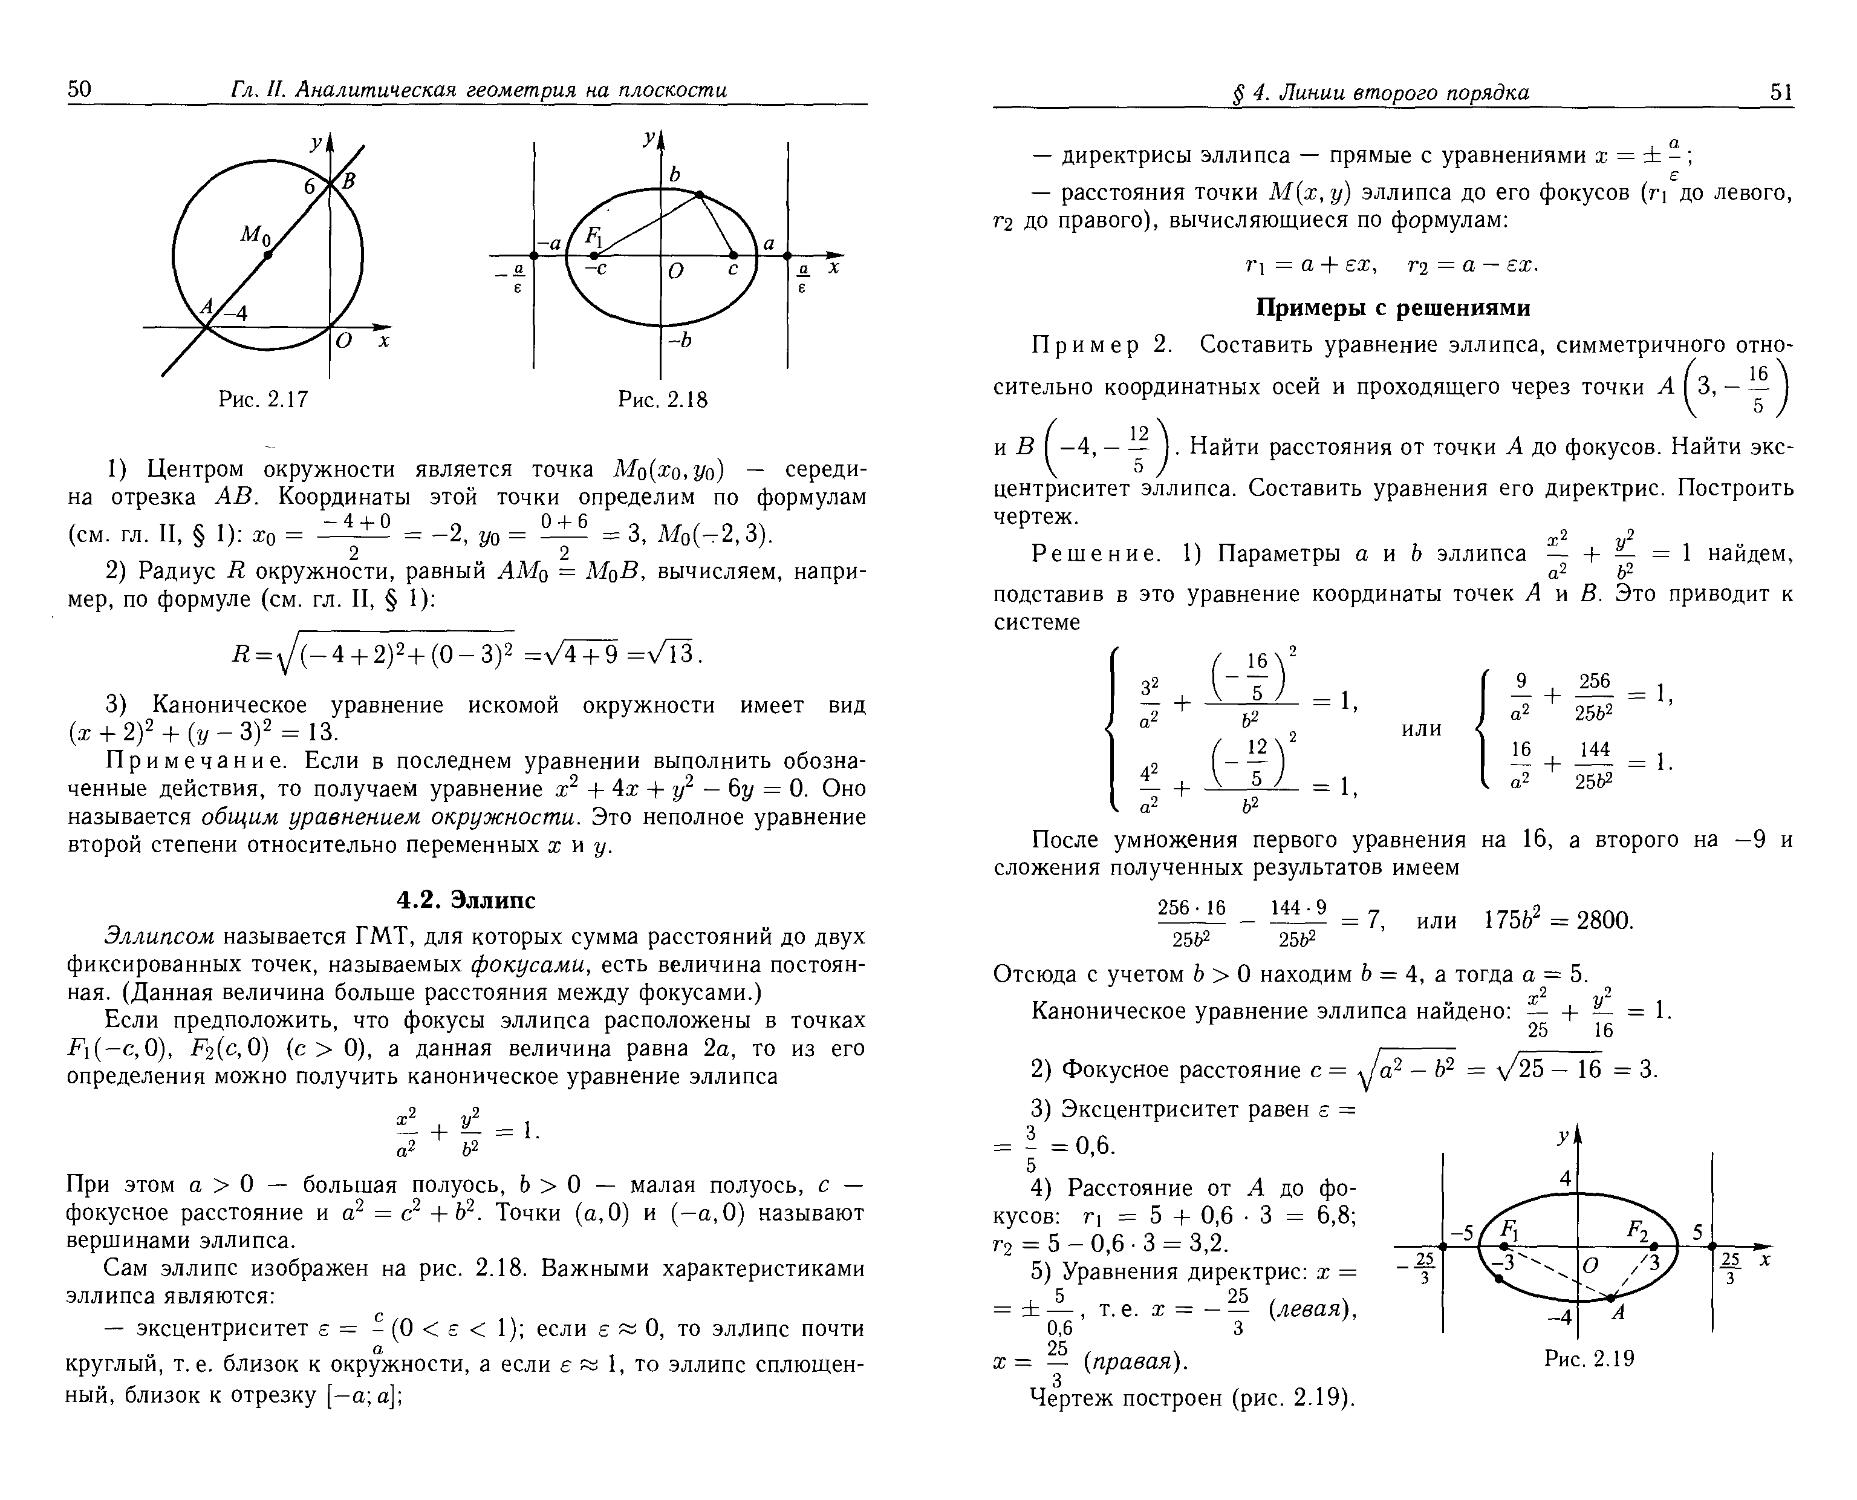 Аналитическая геометрия решение. Уравнение окружности и эллипса. Эллипс уравнение второго порядка. Построение эллипса по уравнению второго порядка. Эллипс аналитическая геометрия.